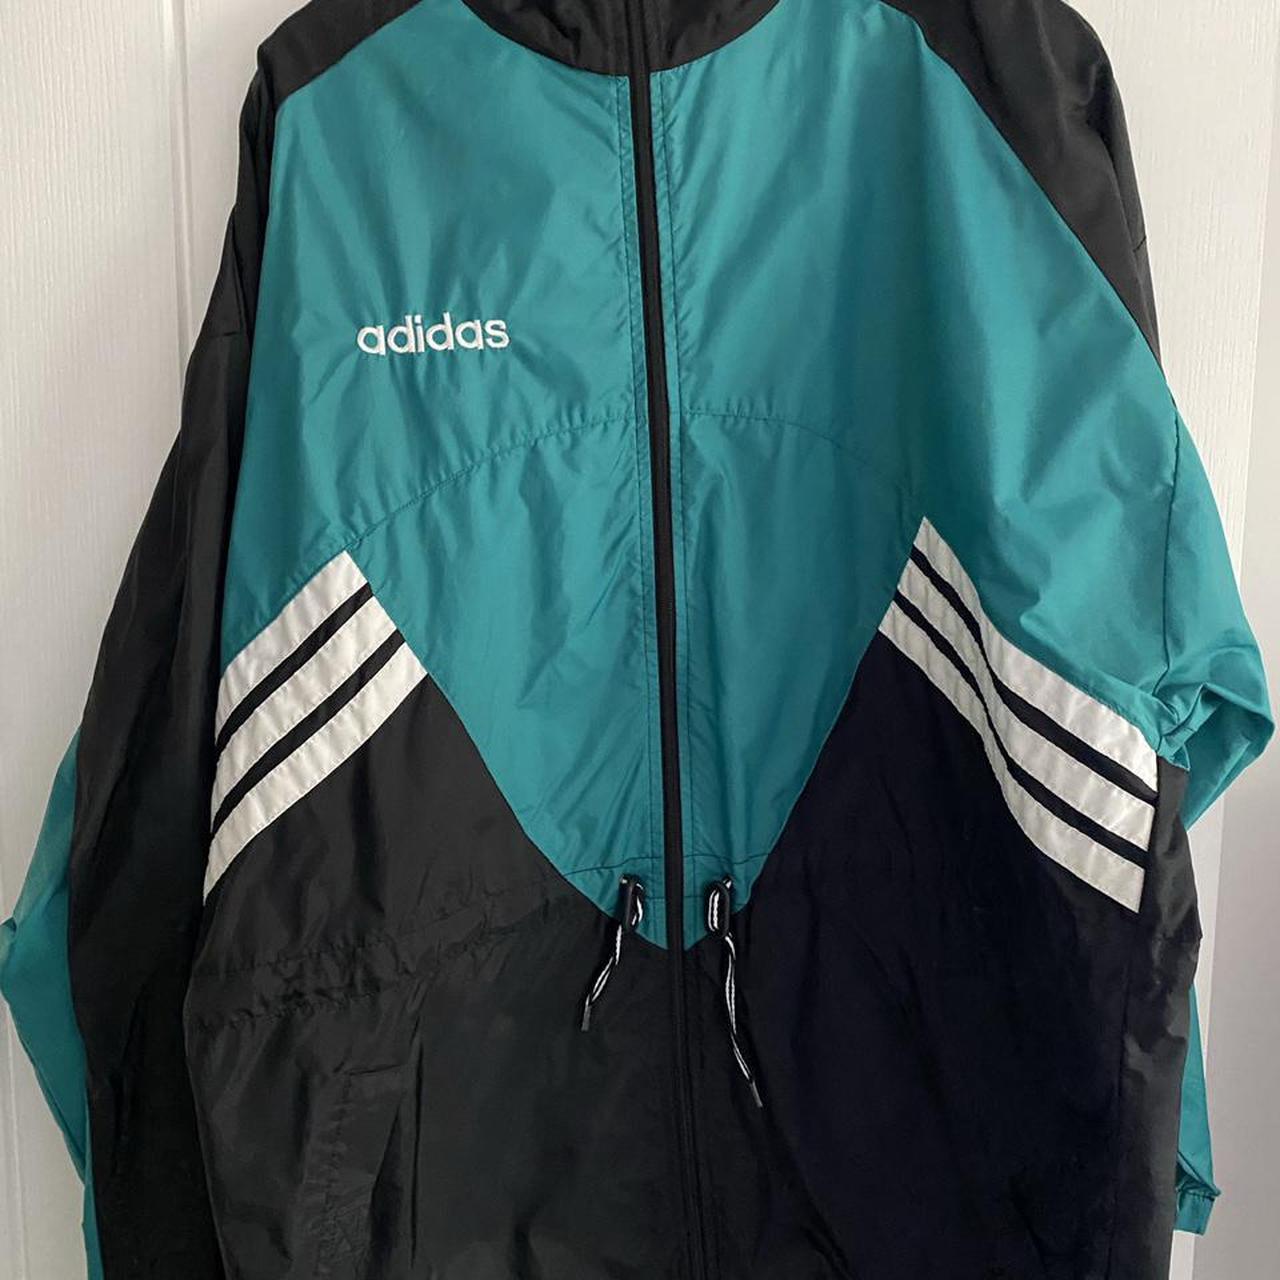 adidas wind breaker jacket selling as is a size... - Depop